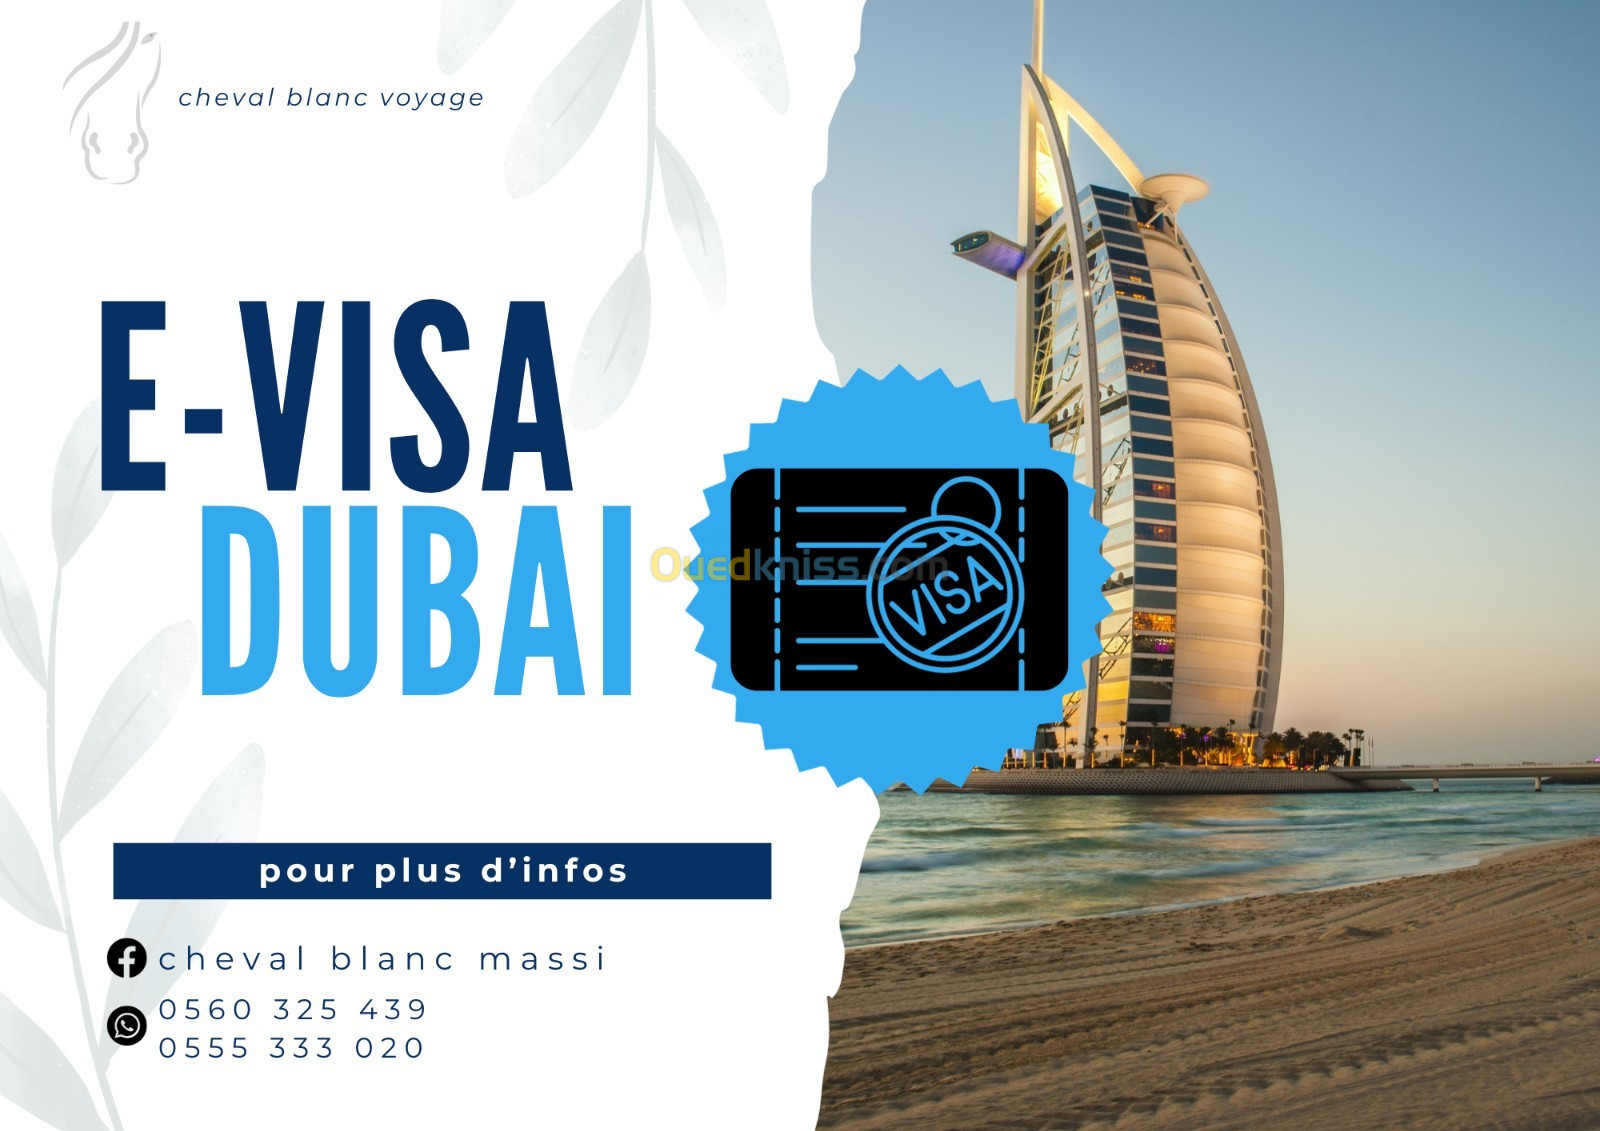 E-visa Dubai/jordanie/ turquie/ egypte/ azerbaidjan 